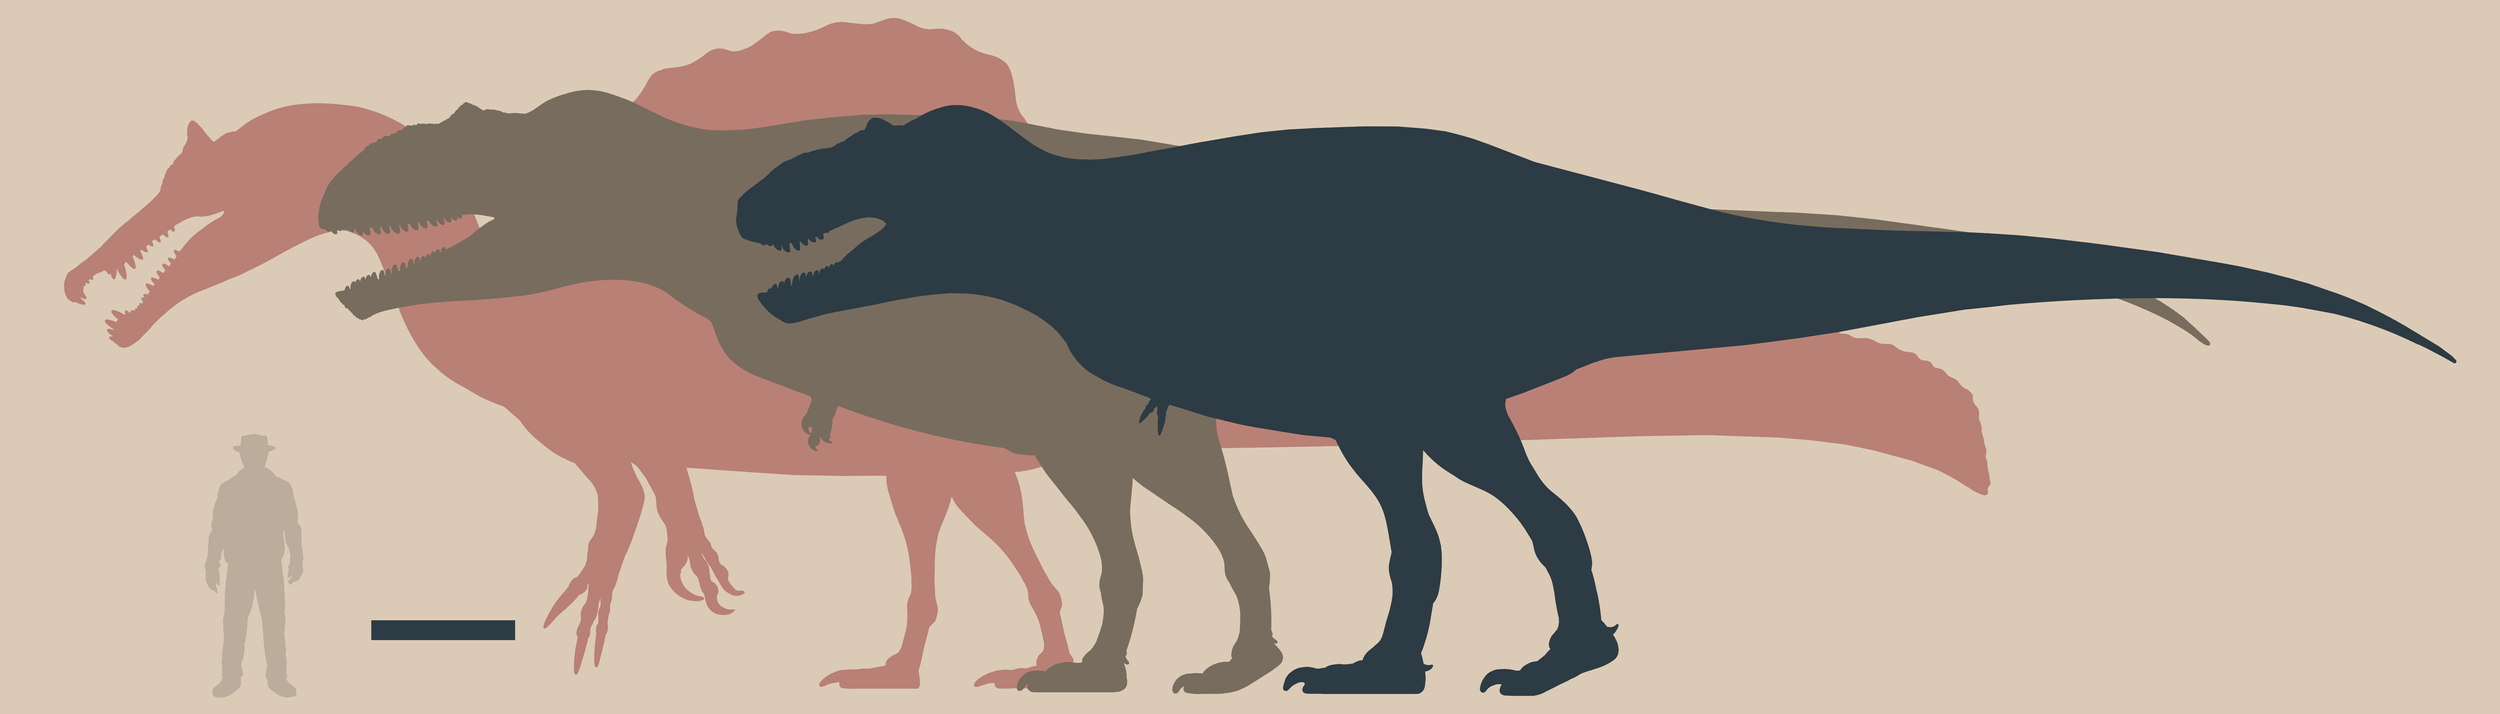 tiranosaurio - Tyrannosaurus rex - Página 5 Image+%2835%29